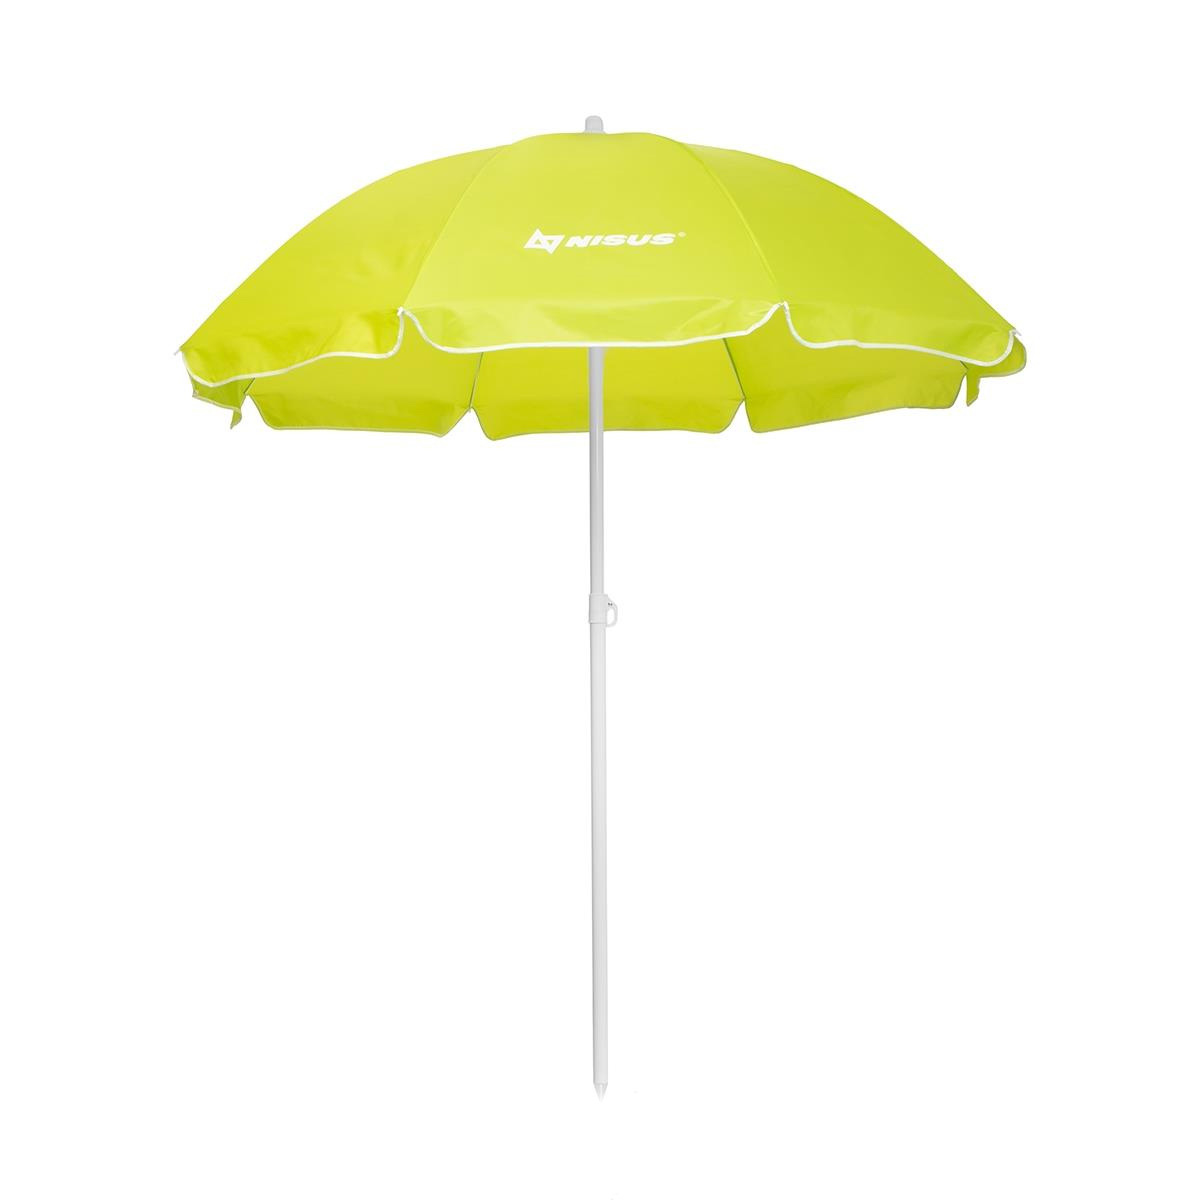 Зонт пляжный прямой HS-200-1, диаметр 200 см